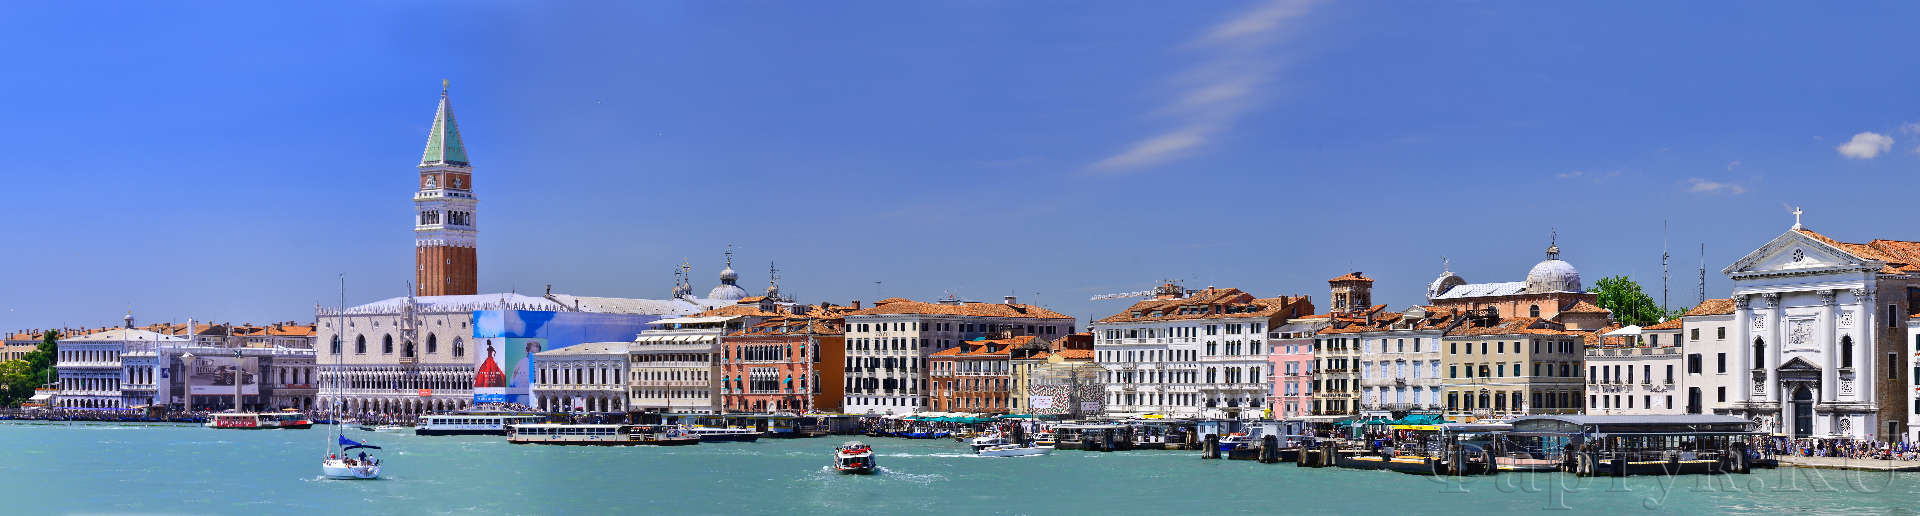 Панорамный вид Венеции, Италия